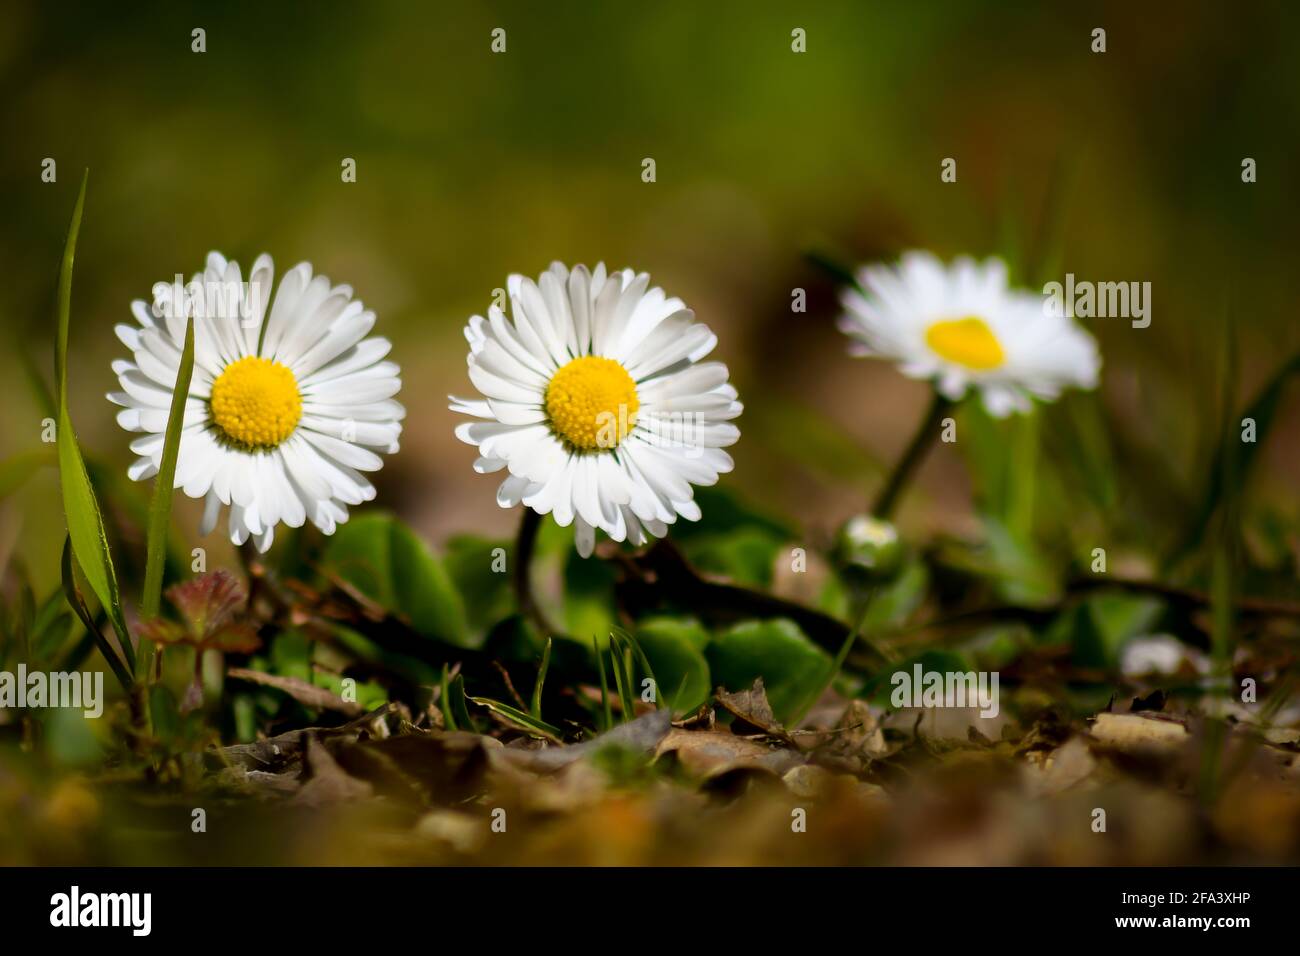 common daisy Stock Photo